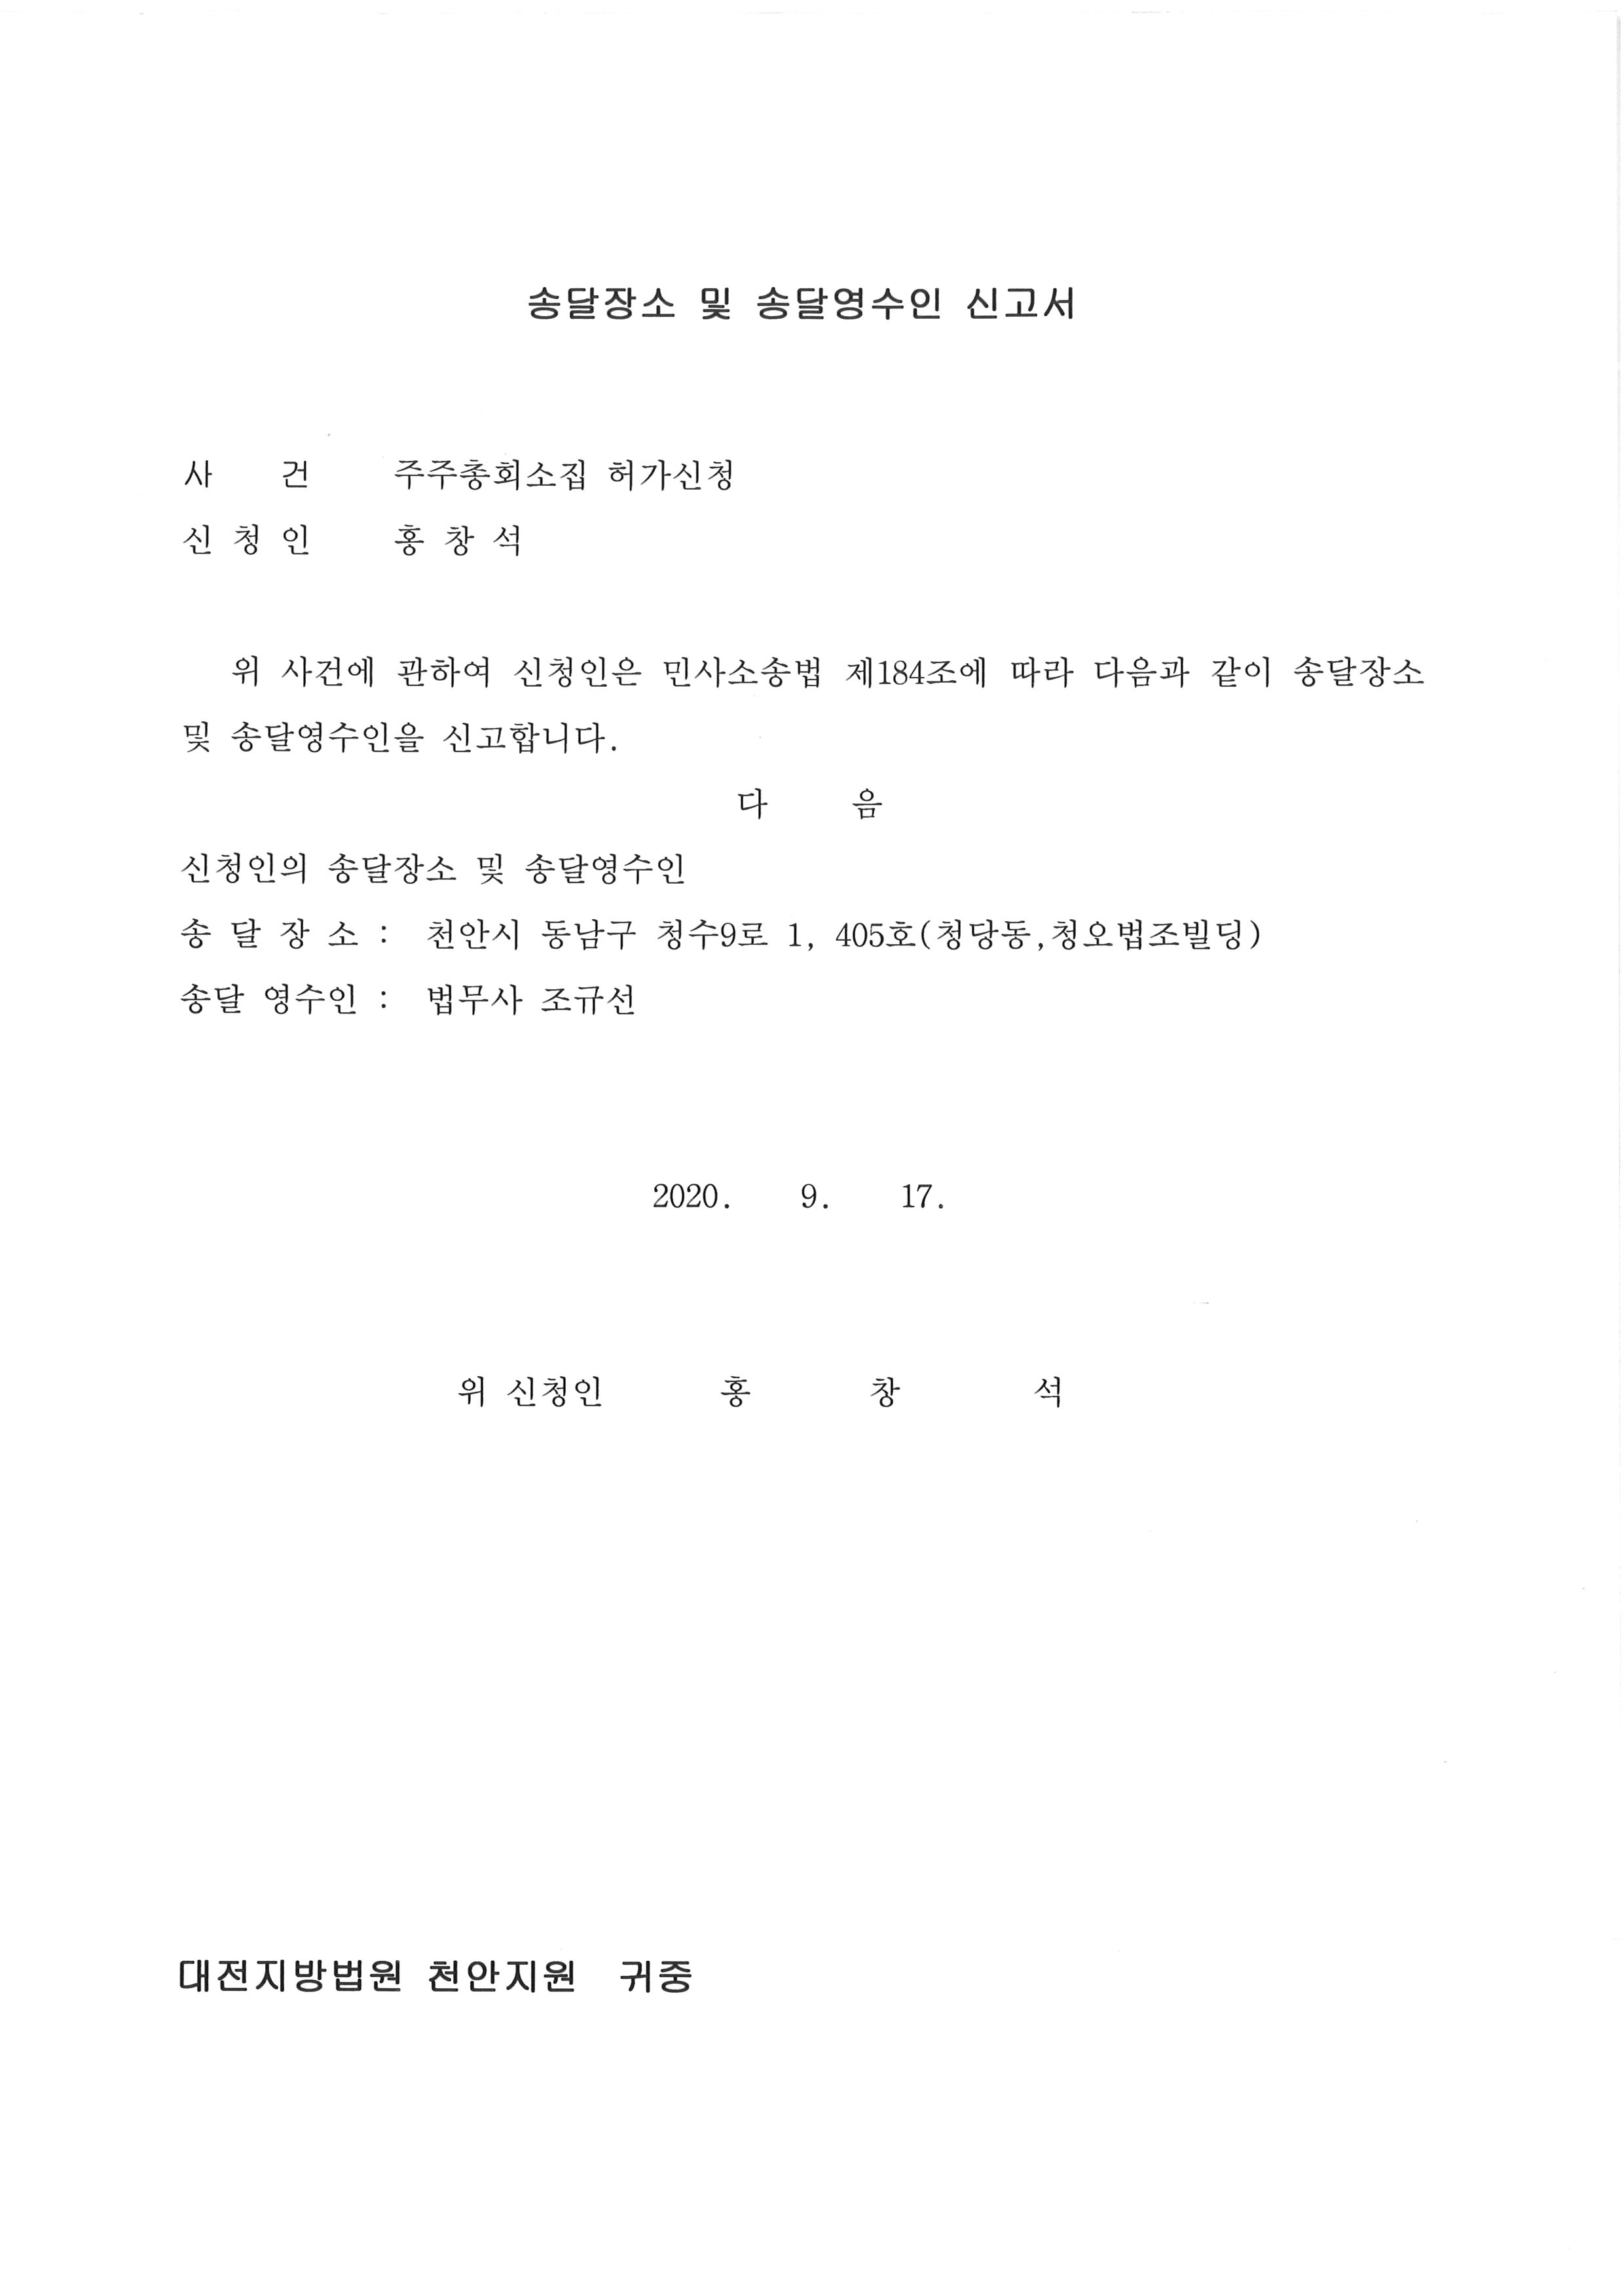 송달장소 및 송달영수인신고서-6.jpg